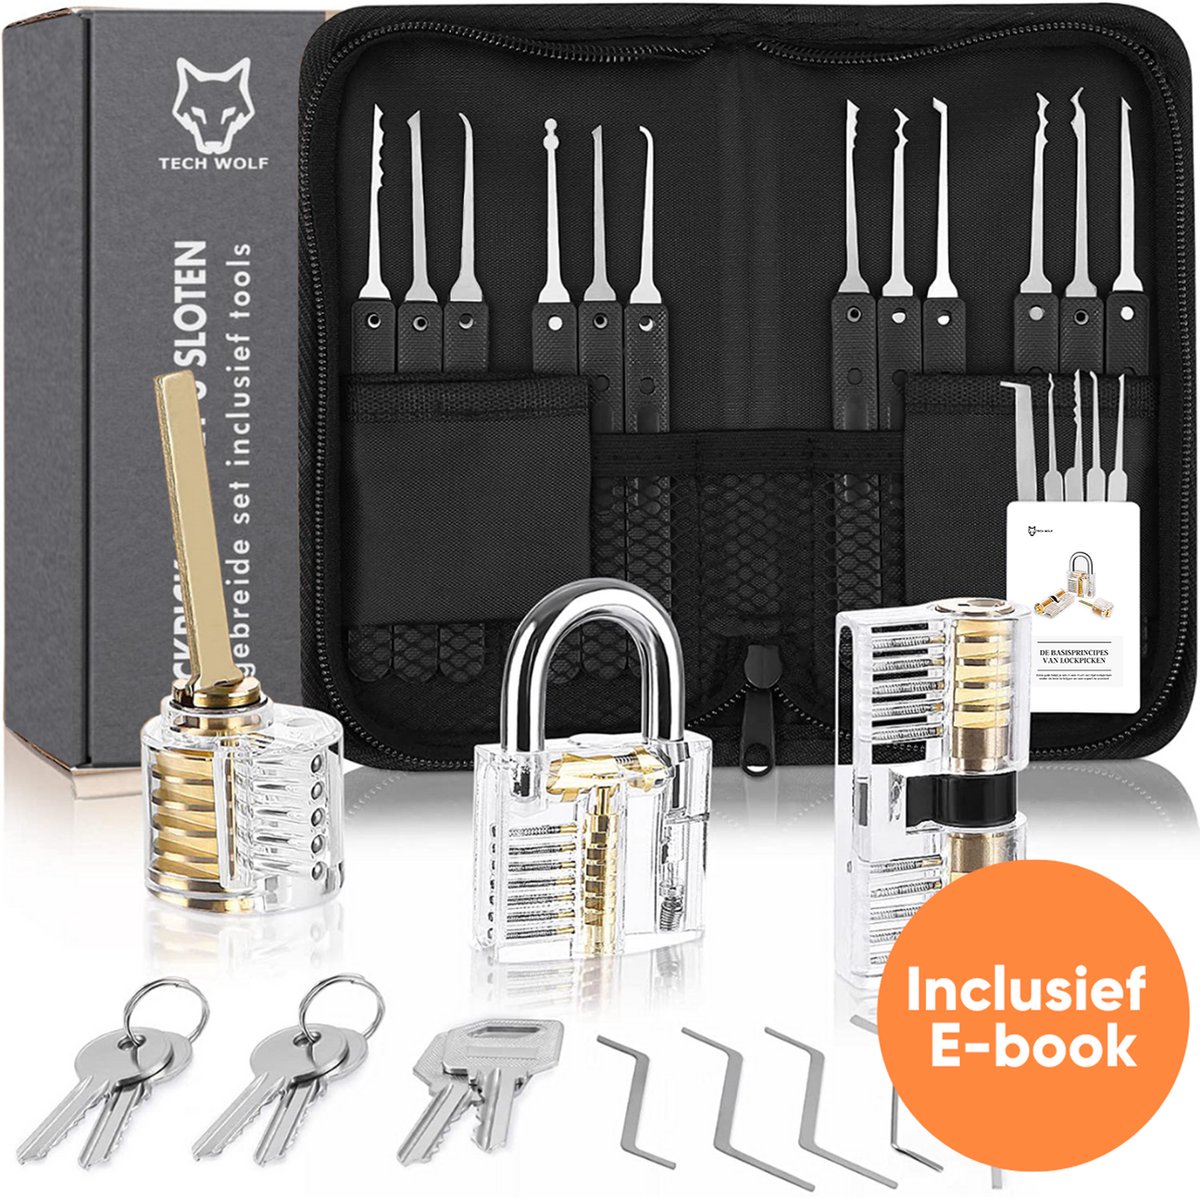 Uitgebreide Lockpick Set met 3 sloten - Lockpicking - Lock pick gereedschap tools - Lockpicken voor beginners en professionals - 2021 Versie- inclusief E-Book - Tech Wolf